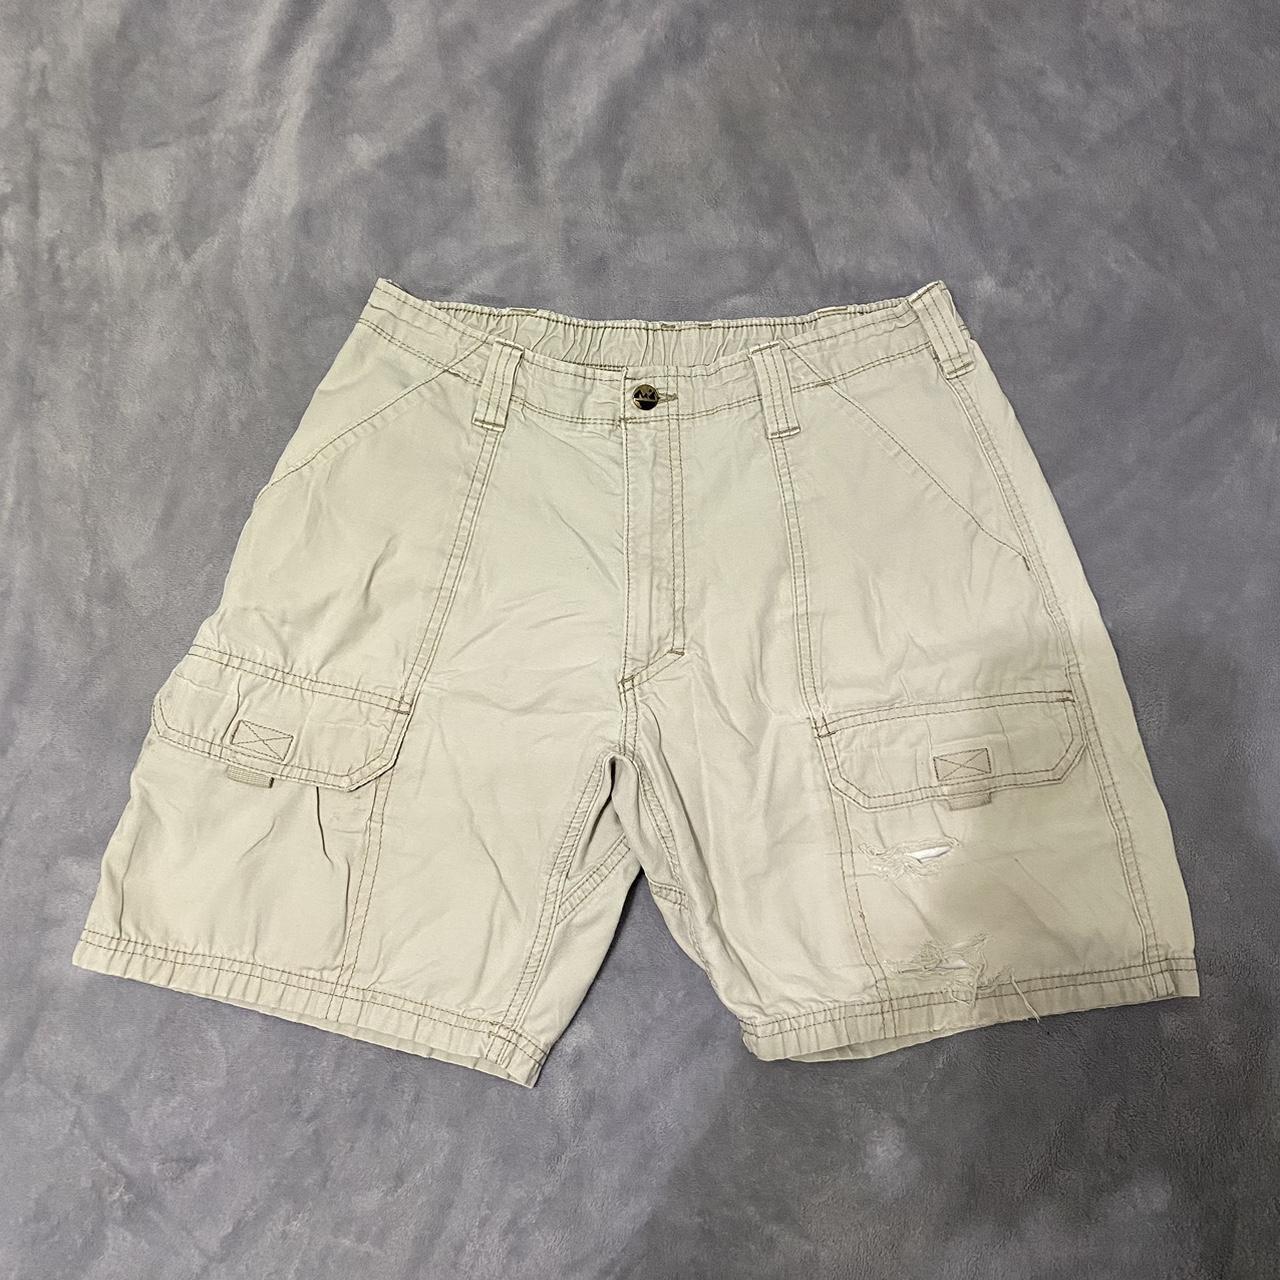 Y2K REI Cargo Shorts - perfect wear - waist size 34 - - Depop